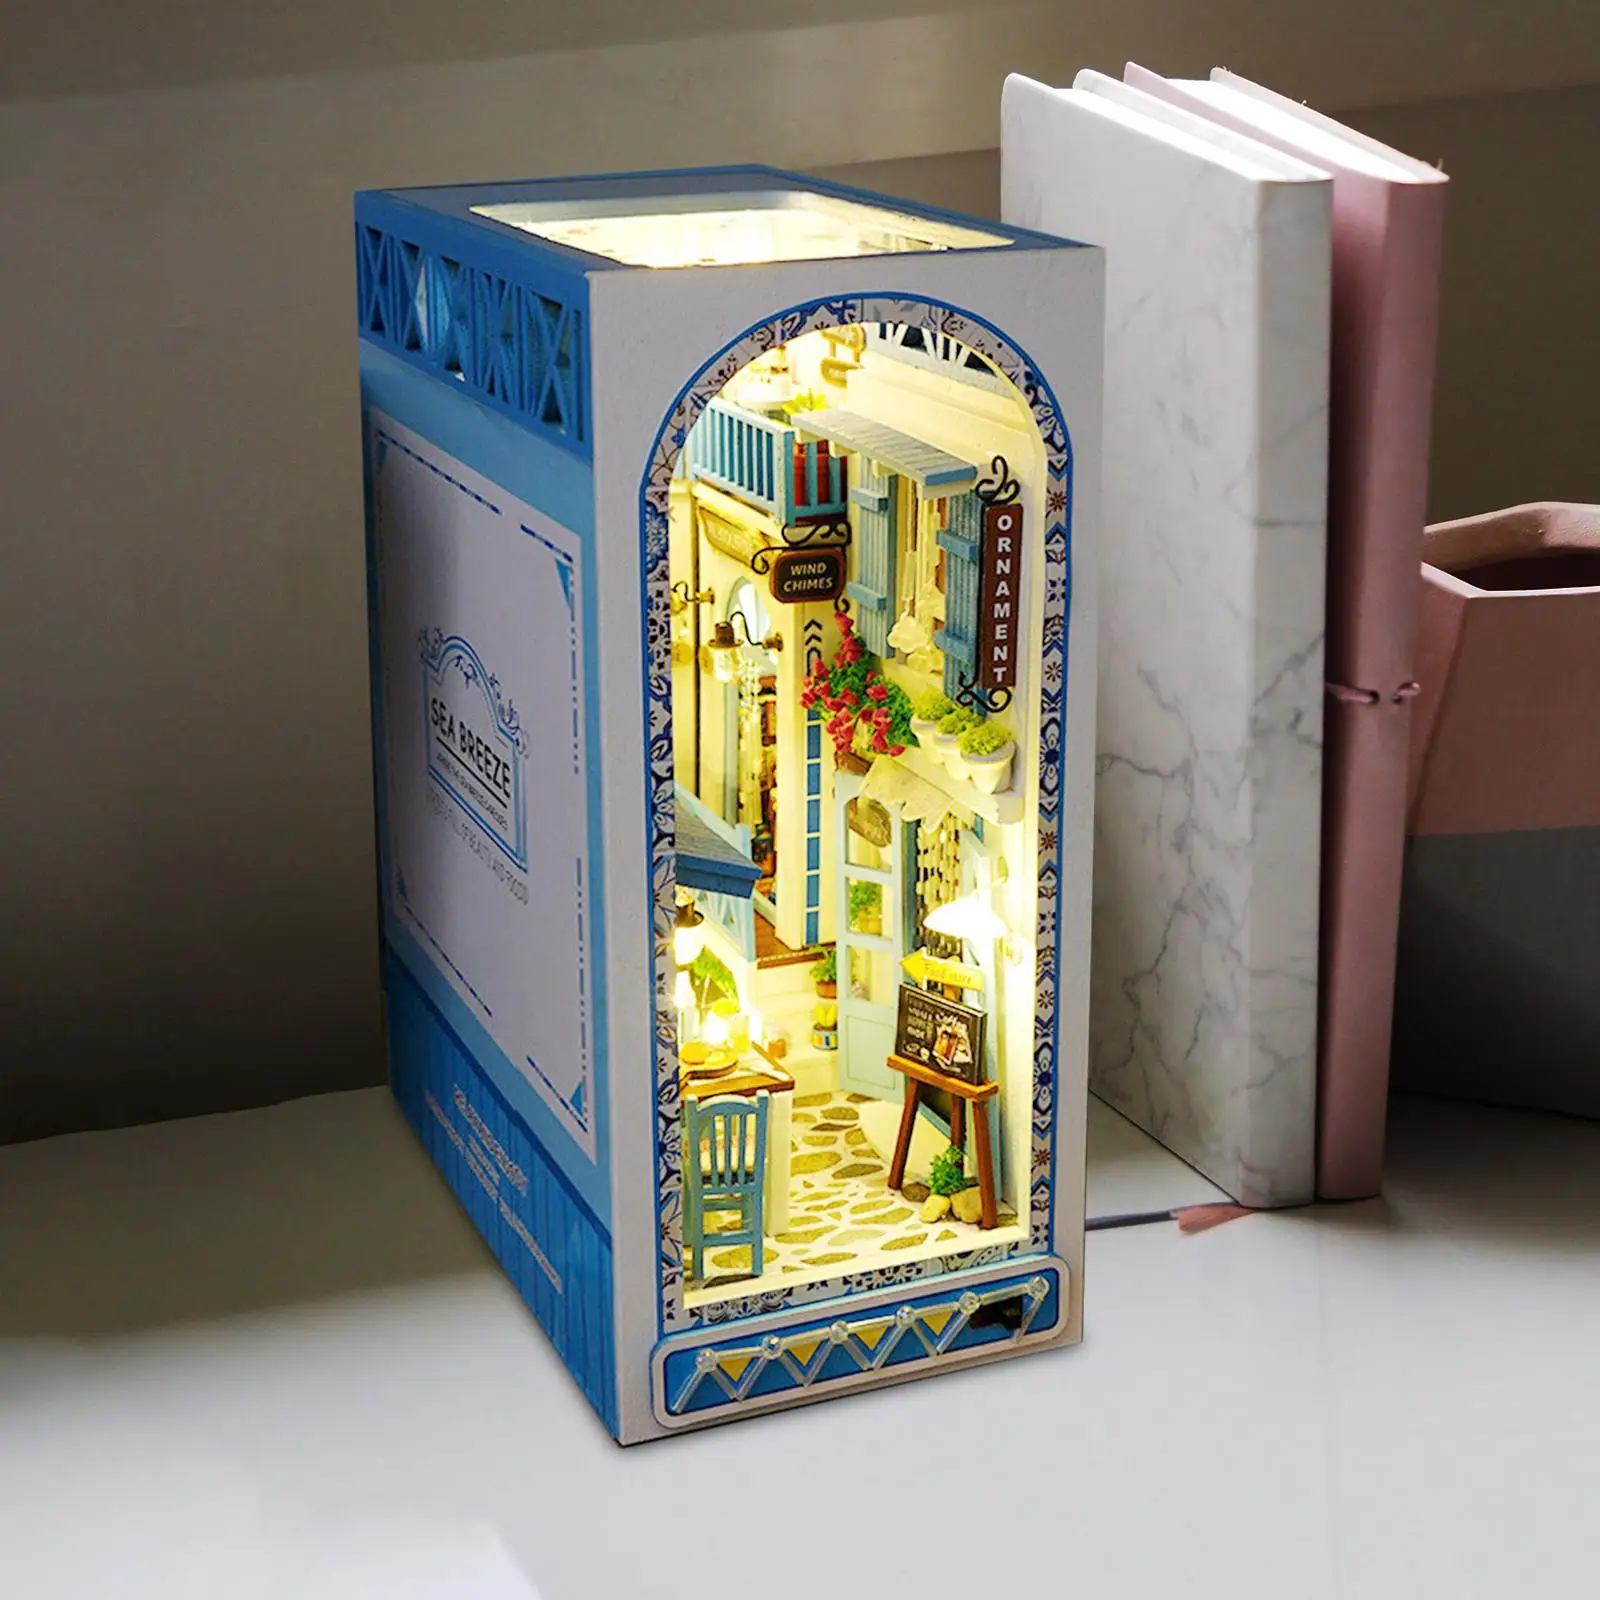 

DIY книжные миниатюрные наборы, строительные аксессуары ручной работы, 3D Деревянный пазл, книжный конец для книги, офиса, дома, стола, винтажная полка